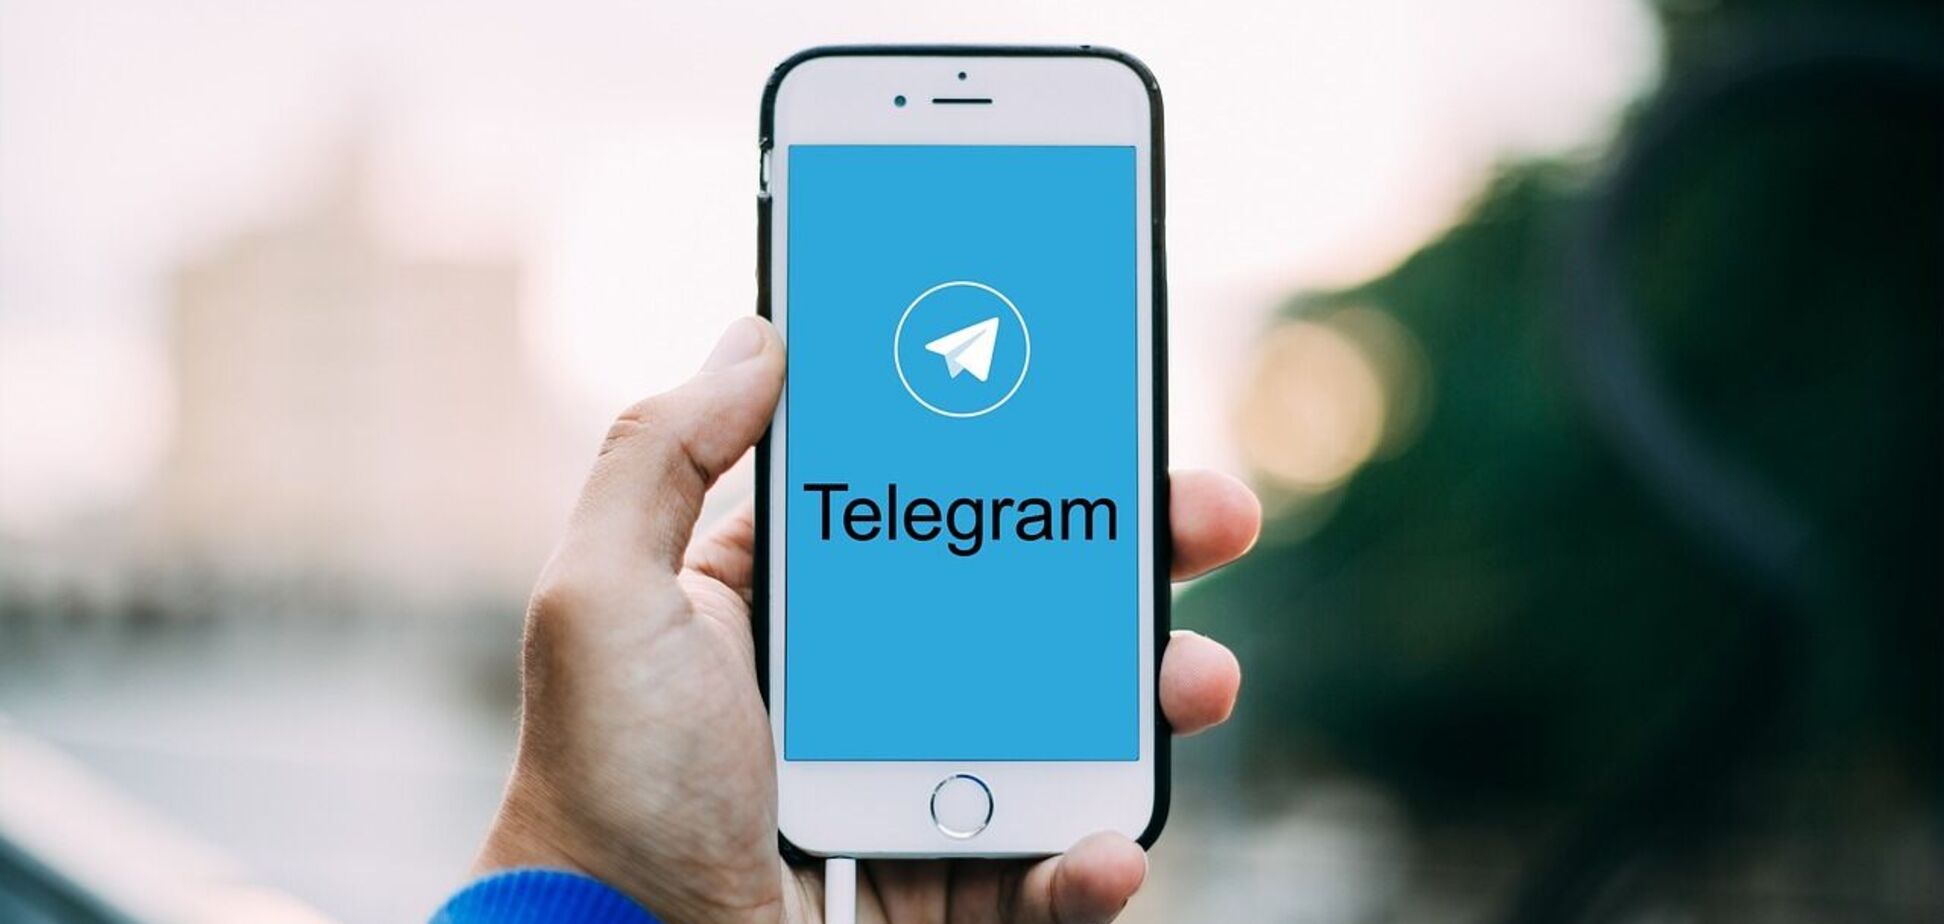 Нет логики, есть ложь, или 'Telegram опасный' не может существовать рядом с 'Подписывайтесь на официальный Telegram'